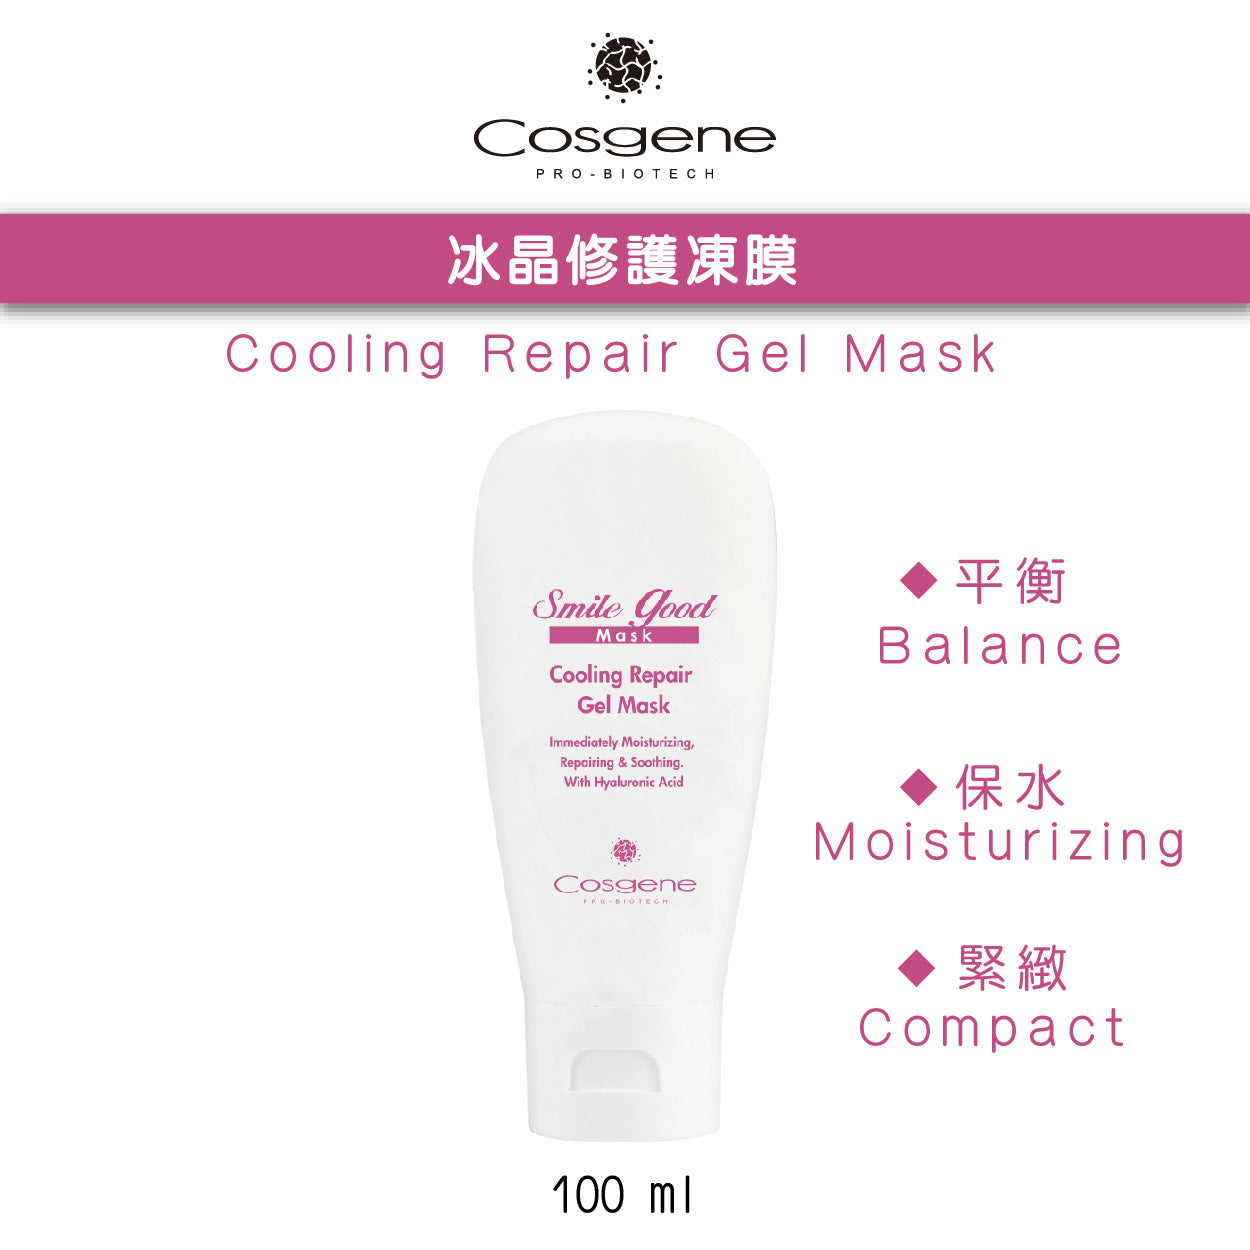 【COSGENE】Cooling Repair Gel Mask